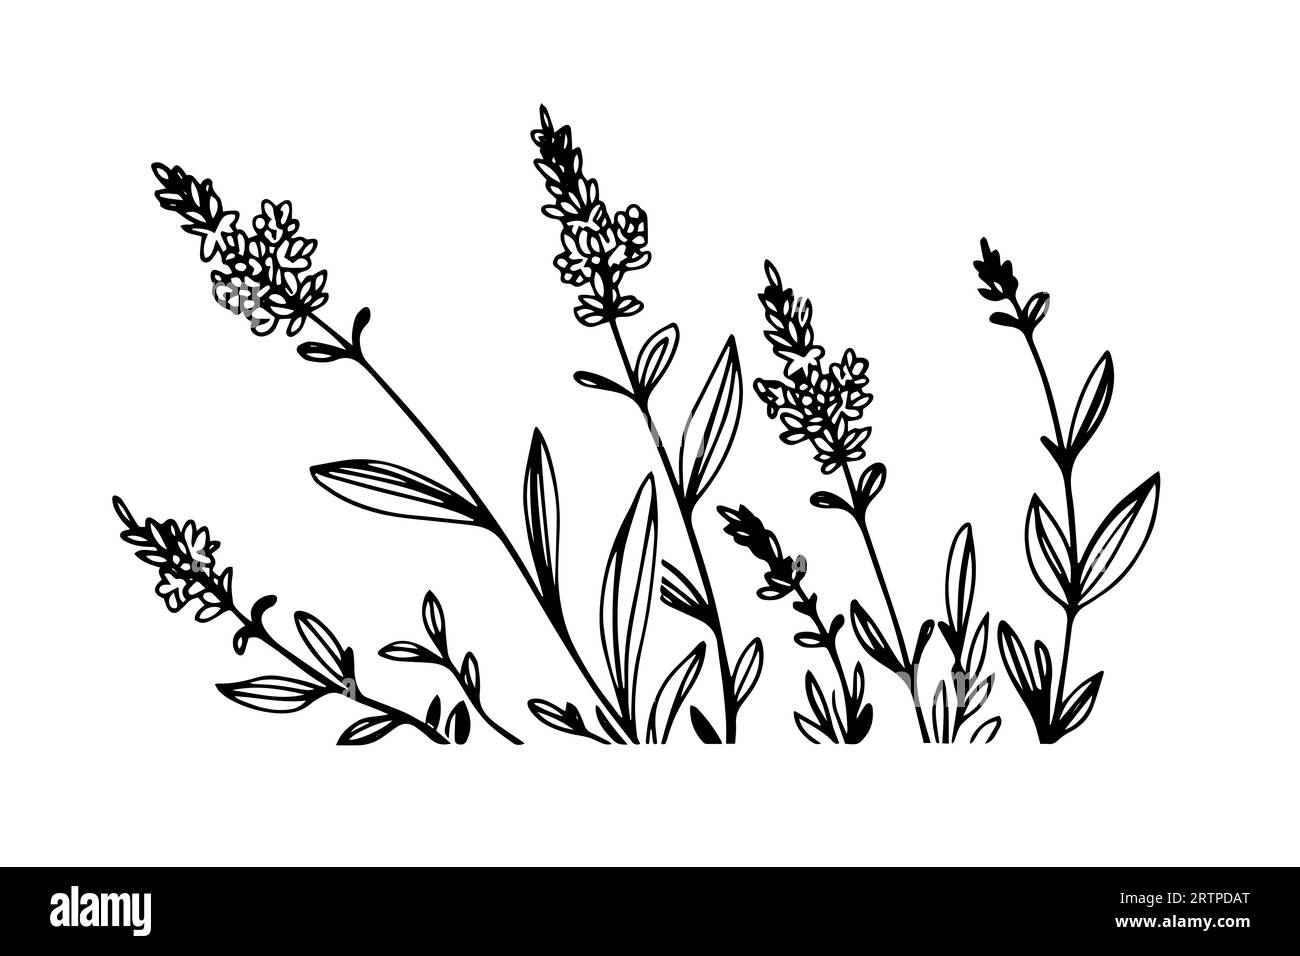 Disegno floreale con fiori di lavanda disegnato a mano. Illustrazione dell'incisione vettoriale. Illustrazione Vettoriale